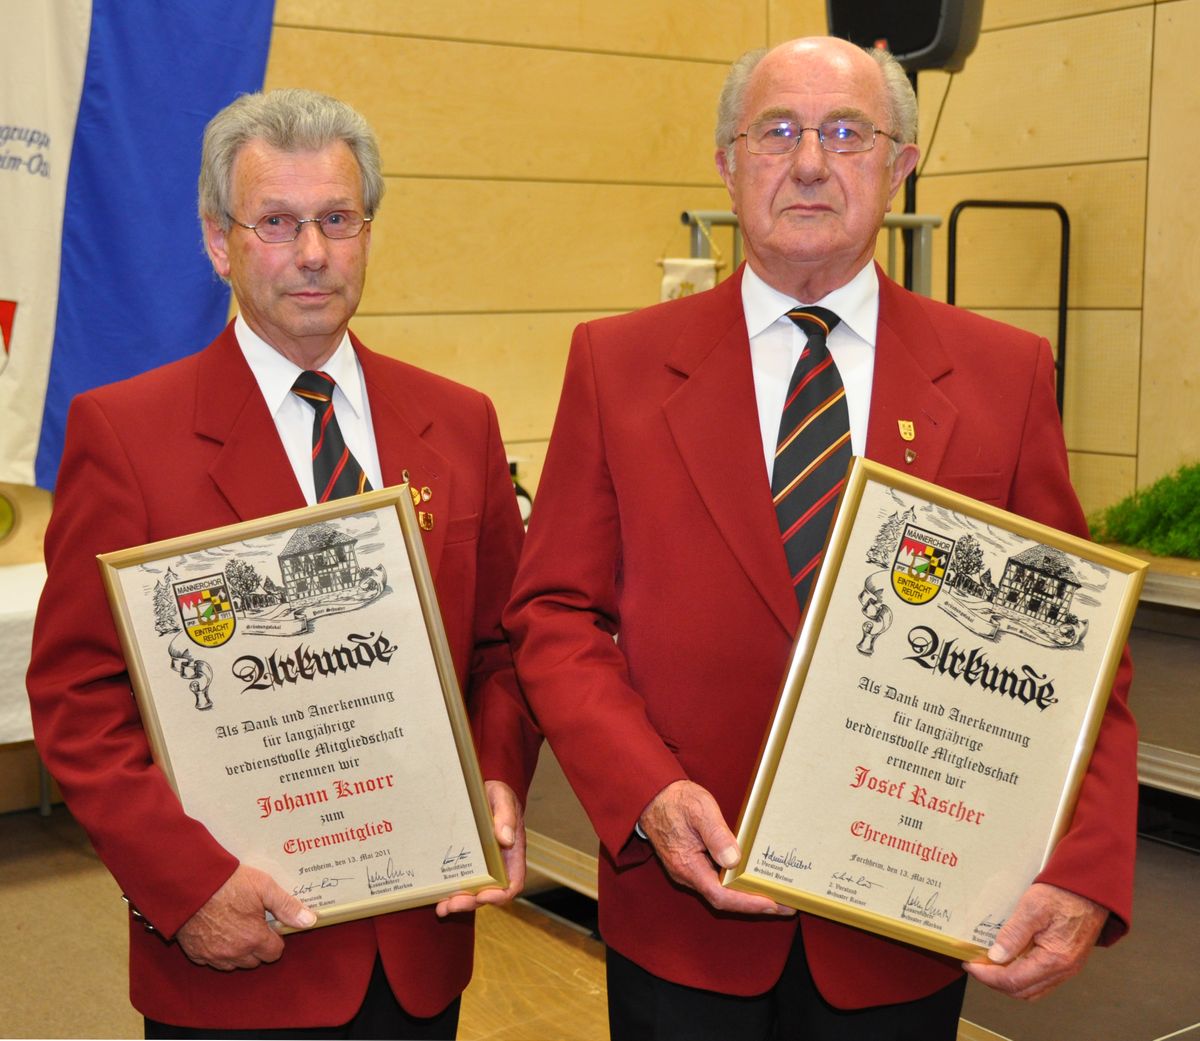 13.05.2011 - 146 - Neue Ehrenmitglieder. Johann Knorr und Josef Rascher